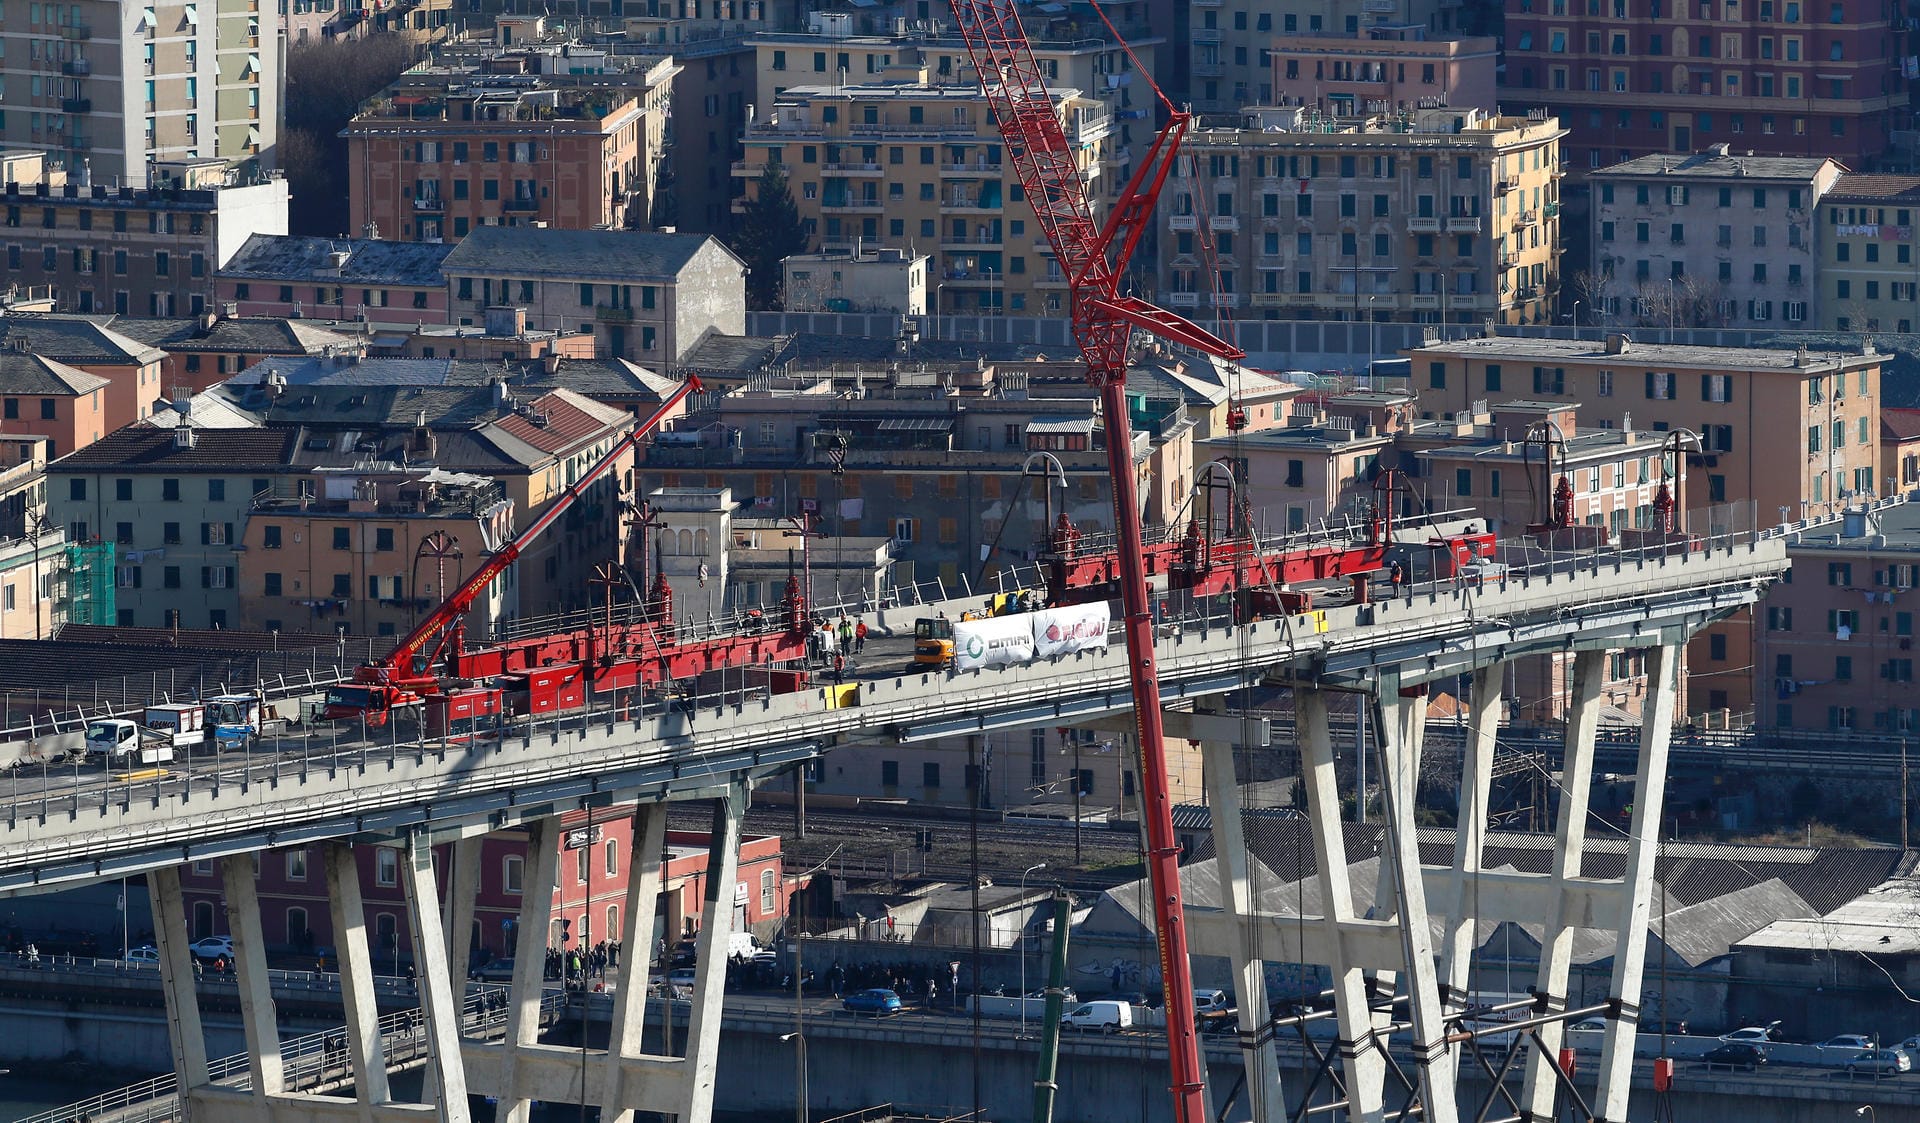 Am 08.02.2019 begannen die Abrissarbeiten: Beim Einsturz der Ponte Morandi kamen 43 Menschen ums Leben.